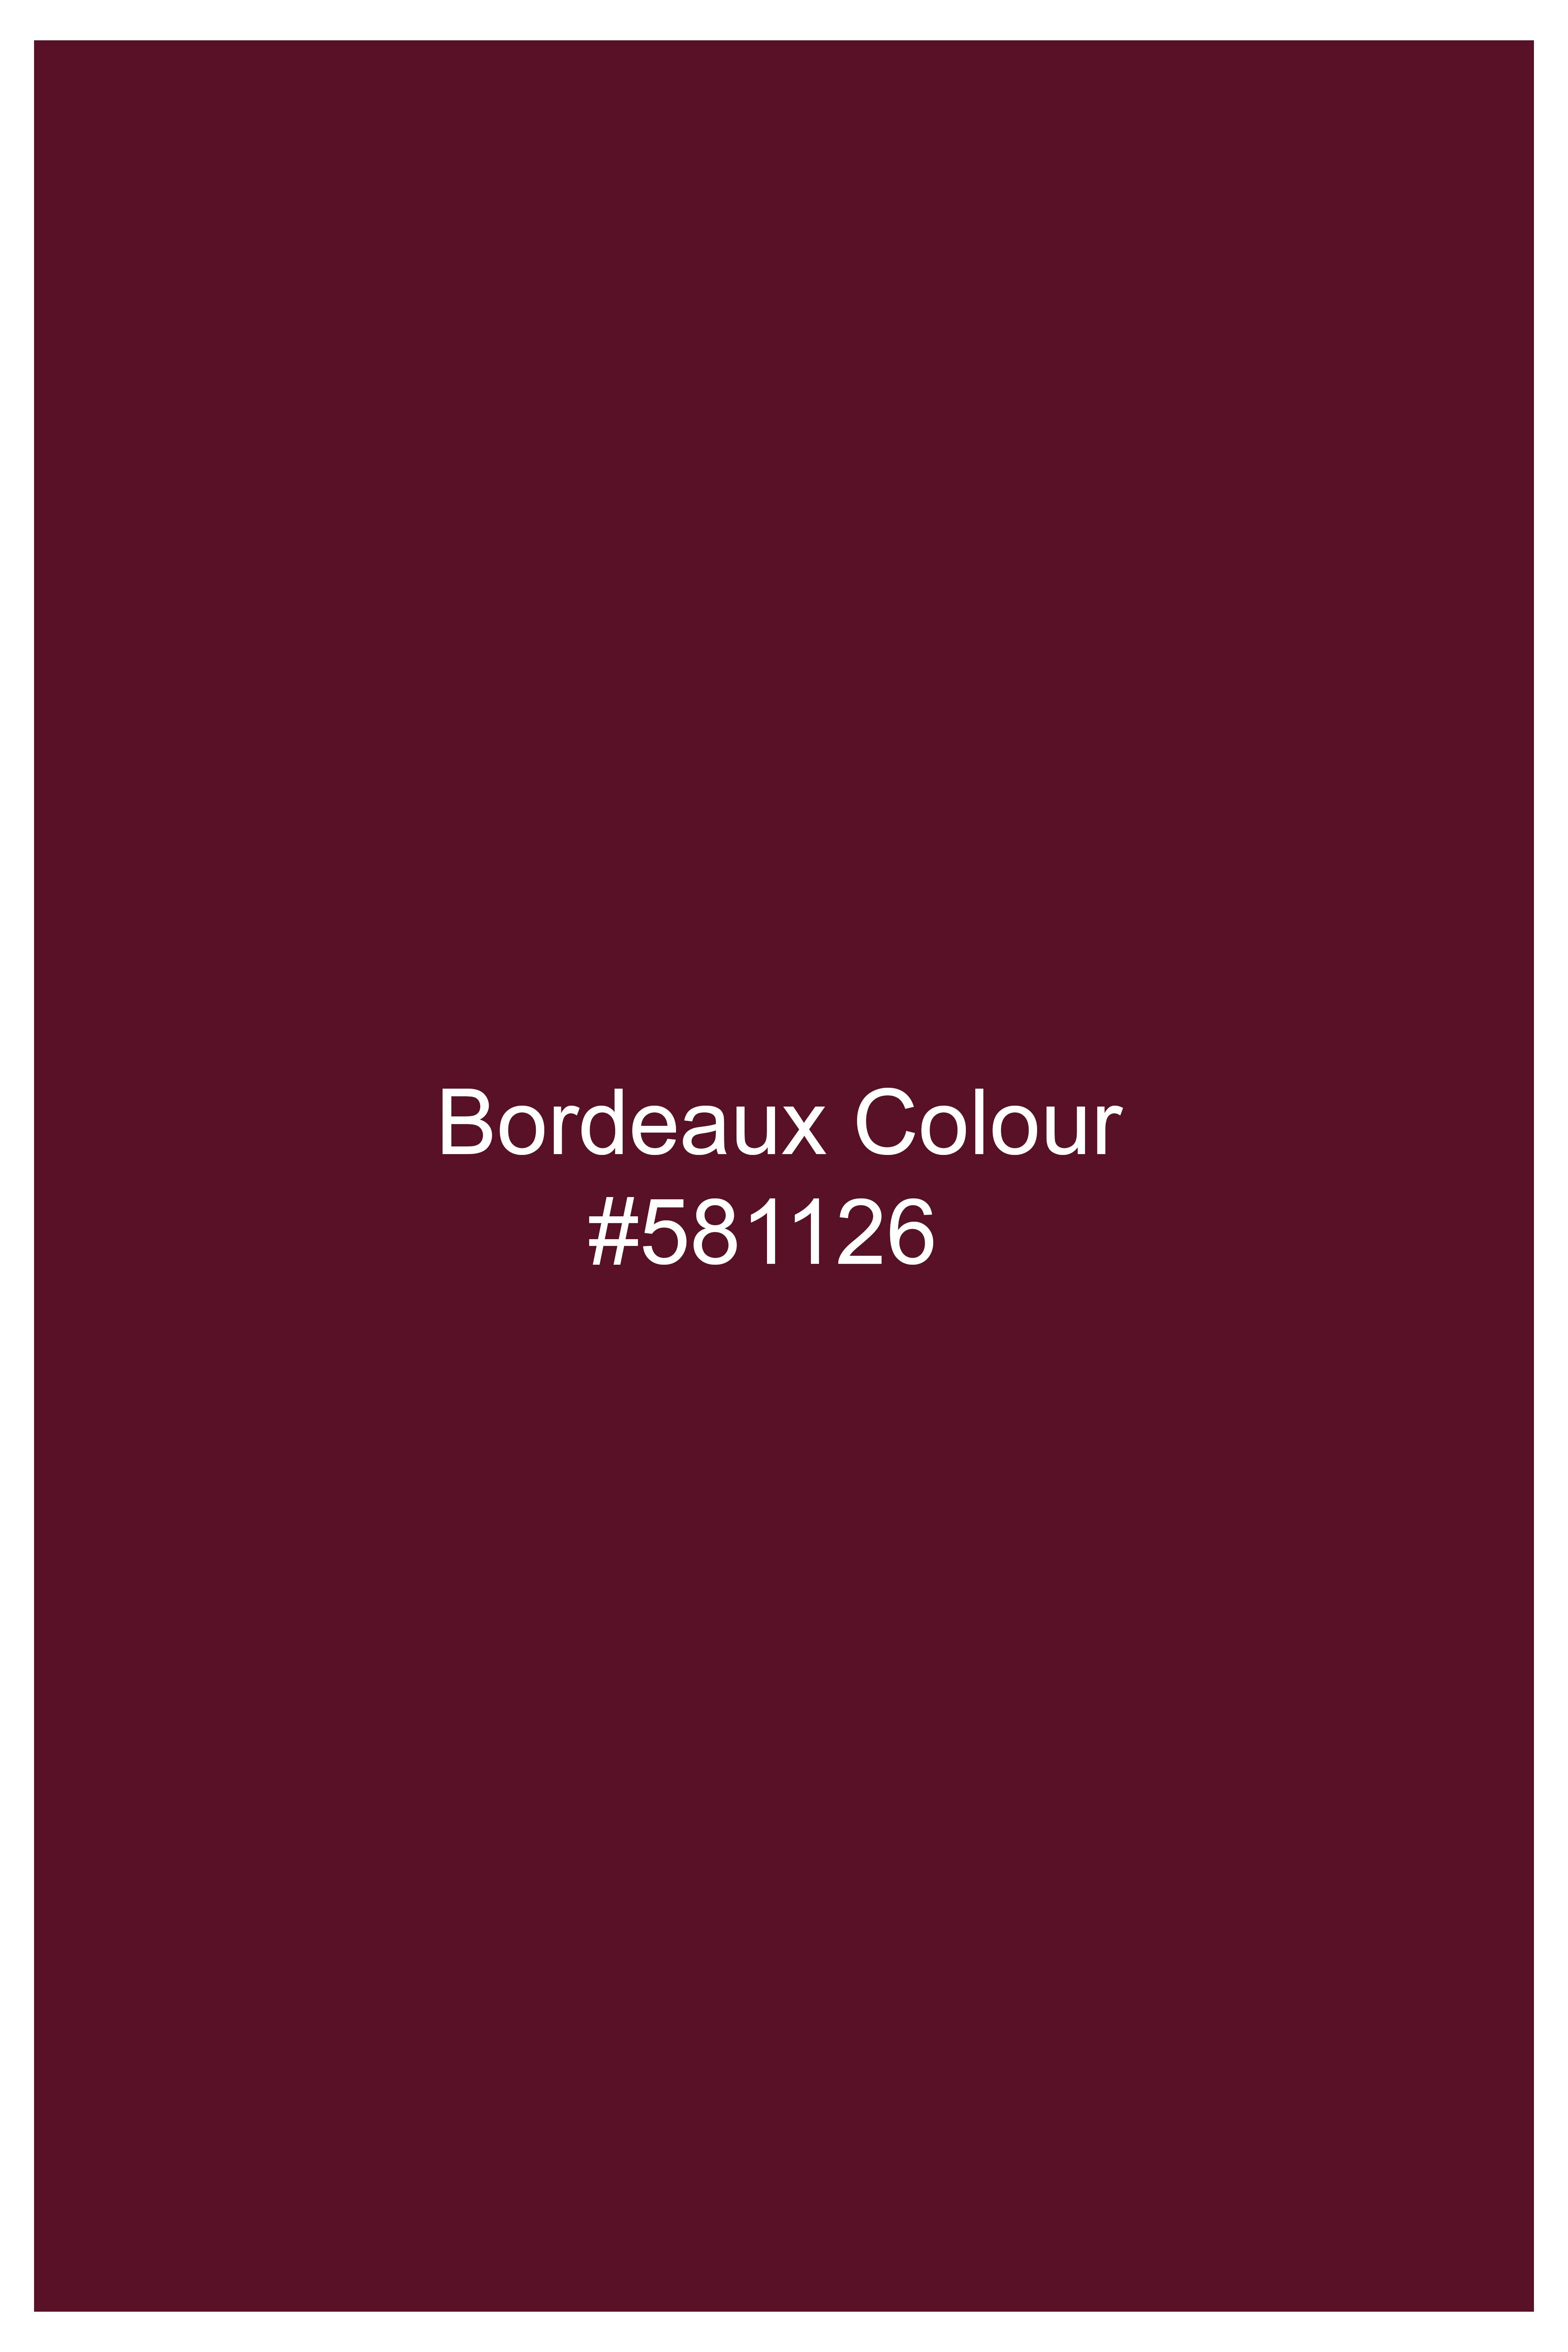 Bordeaux Maroon Cross Buttoned Wool Rich Bandhgala Suit ST3050-CBG2-36, ST3050-CBG2-38, ST3050-CBG2-40, ST3050-CBG2-42, ST3050-CBG2-44, ST3050-CBG2-46, ST3050-CBG2-48, ST3050-CBG2-50, ST3050-CBG2-52, ST3050-CBG2-54, ST3050-CBG2-56, ST3050-CBG2-58, ST3050-CBG2-60